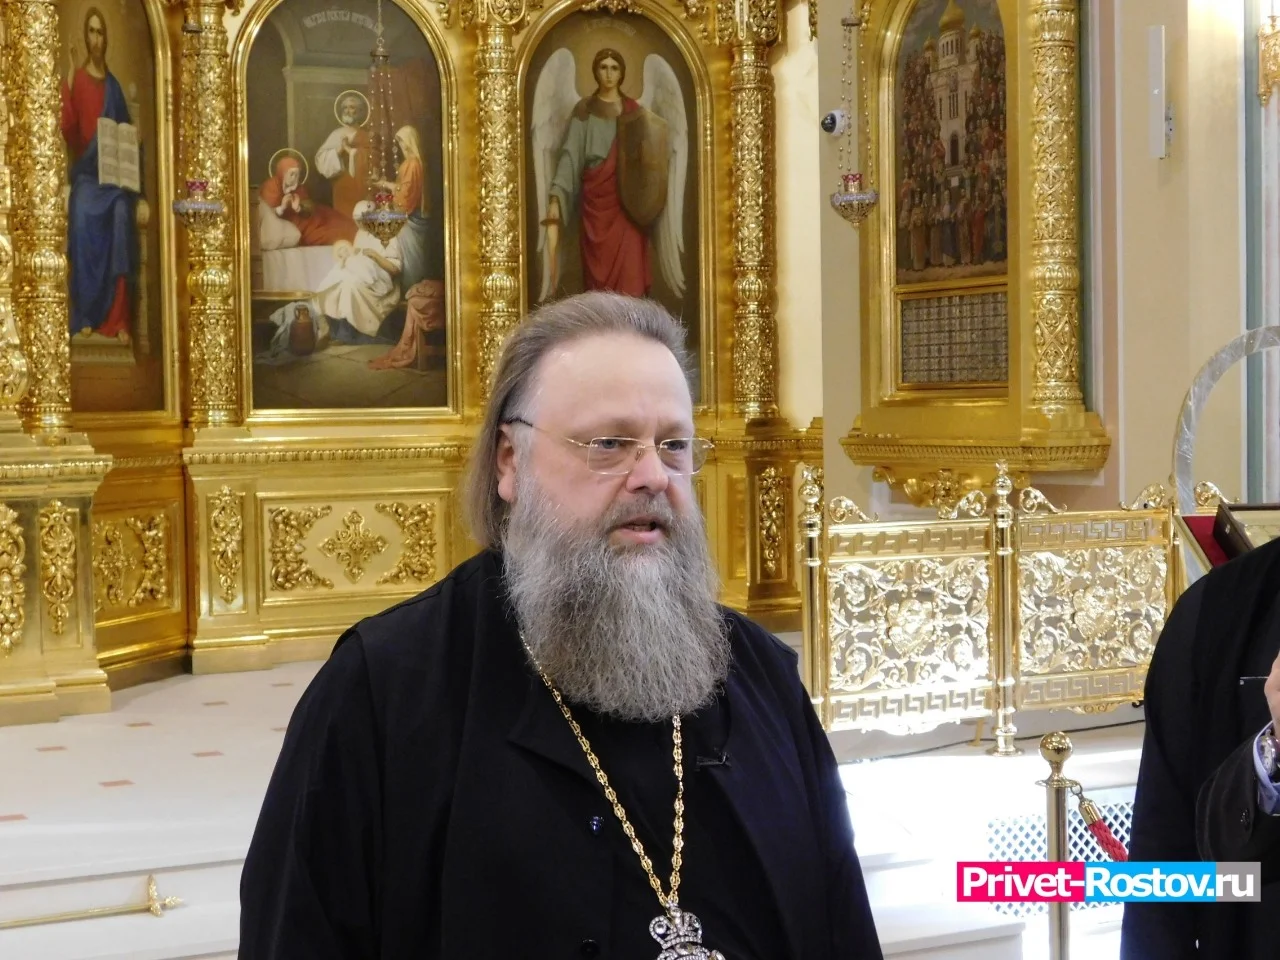 Ростовский митрополит заявил, что ЭКО — «дело противоестественное» и призвал бездетные пары молиться